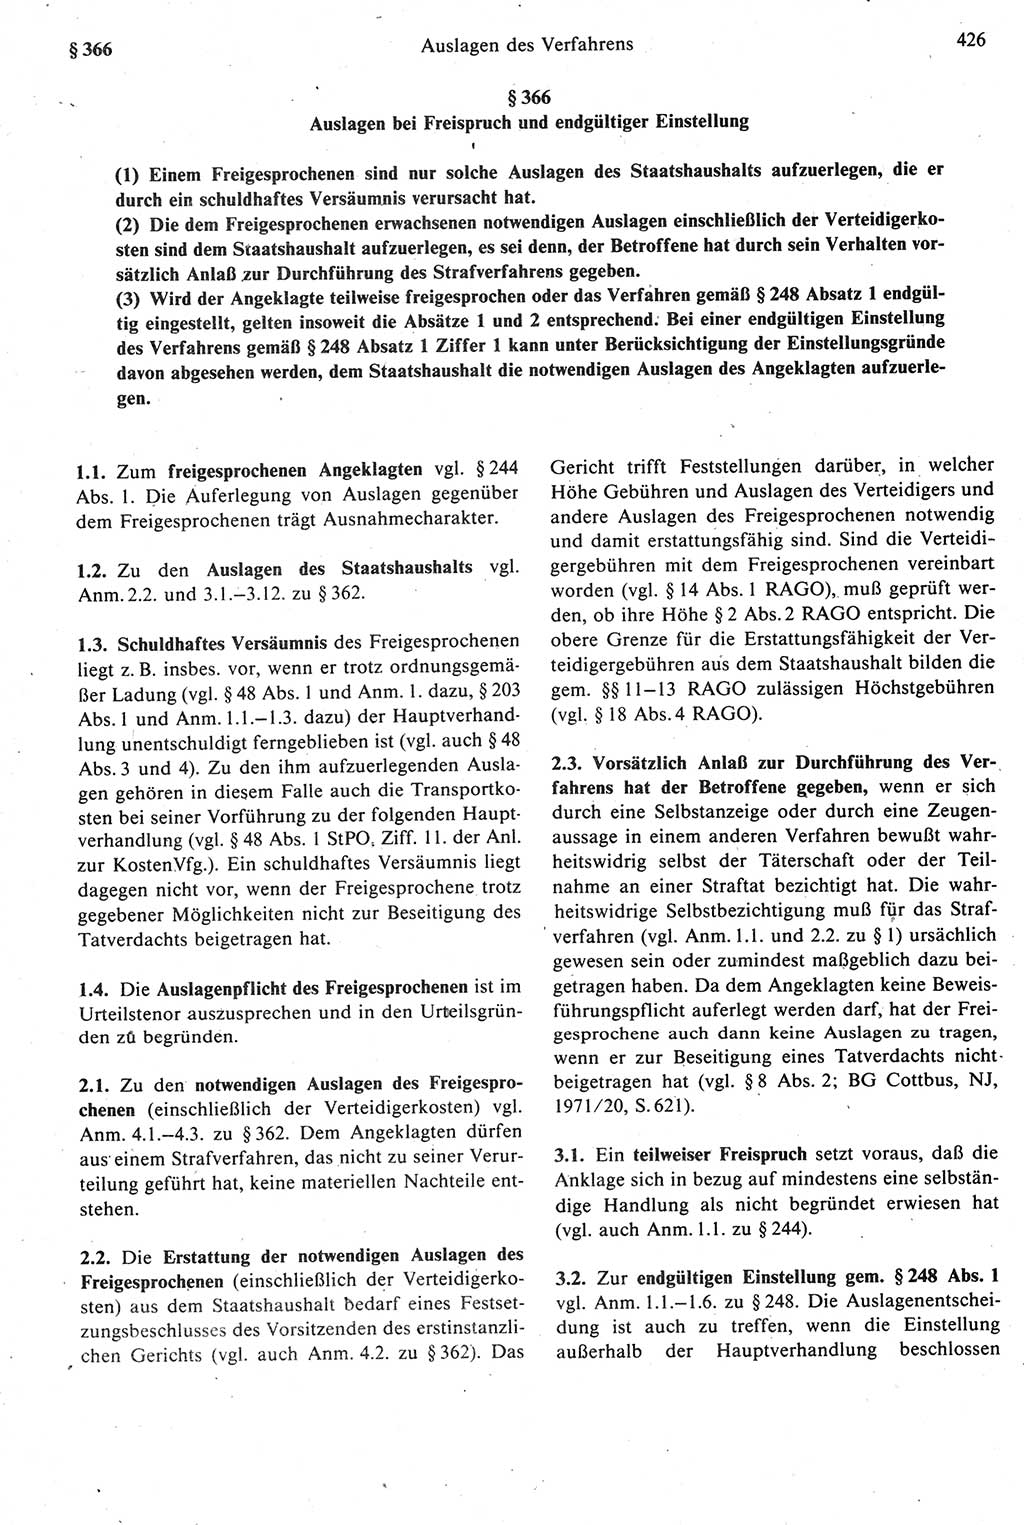 Strafprozeßrecht der DDR [Deutsche Demokratische Republik], Kommentar zur Strafprozeßordnung (StPO) 1987, Seite 426 (Strafprozeßr. DDR Komm. StPO 1987, S. 426)